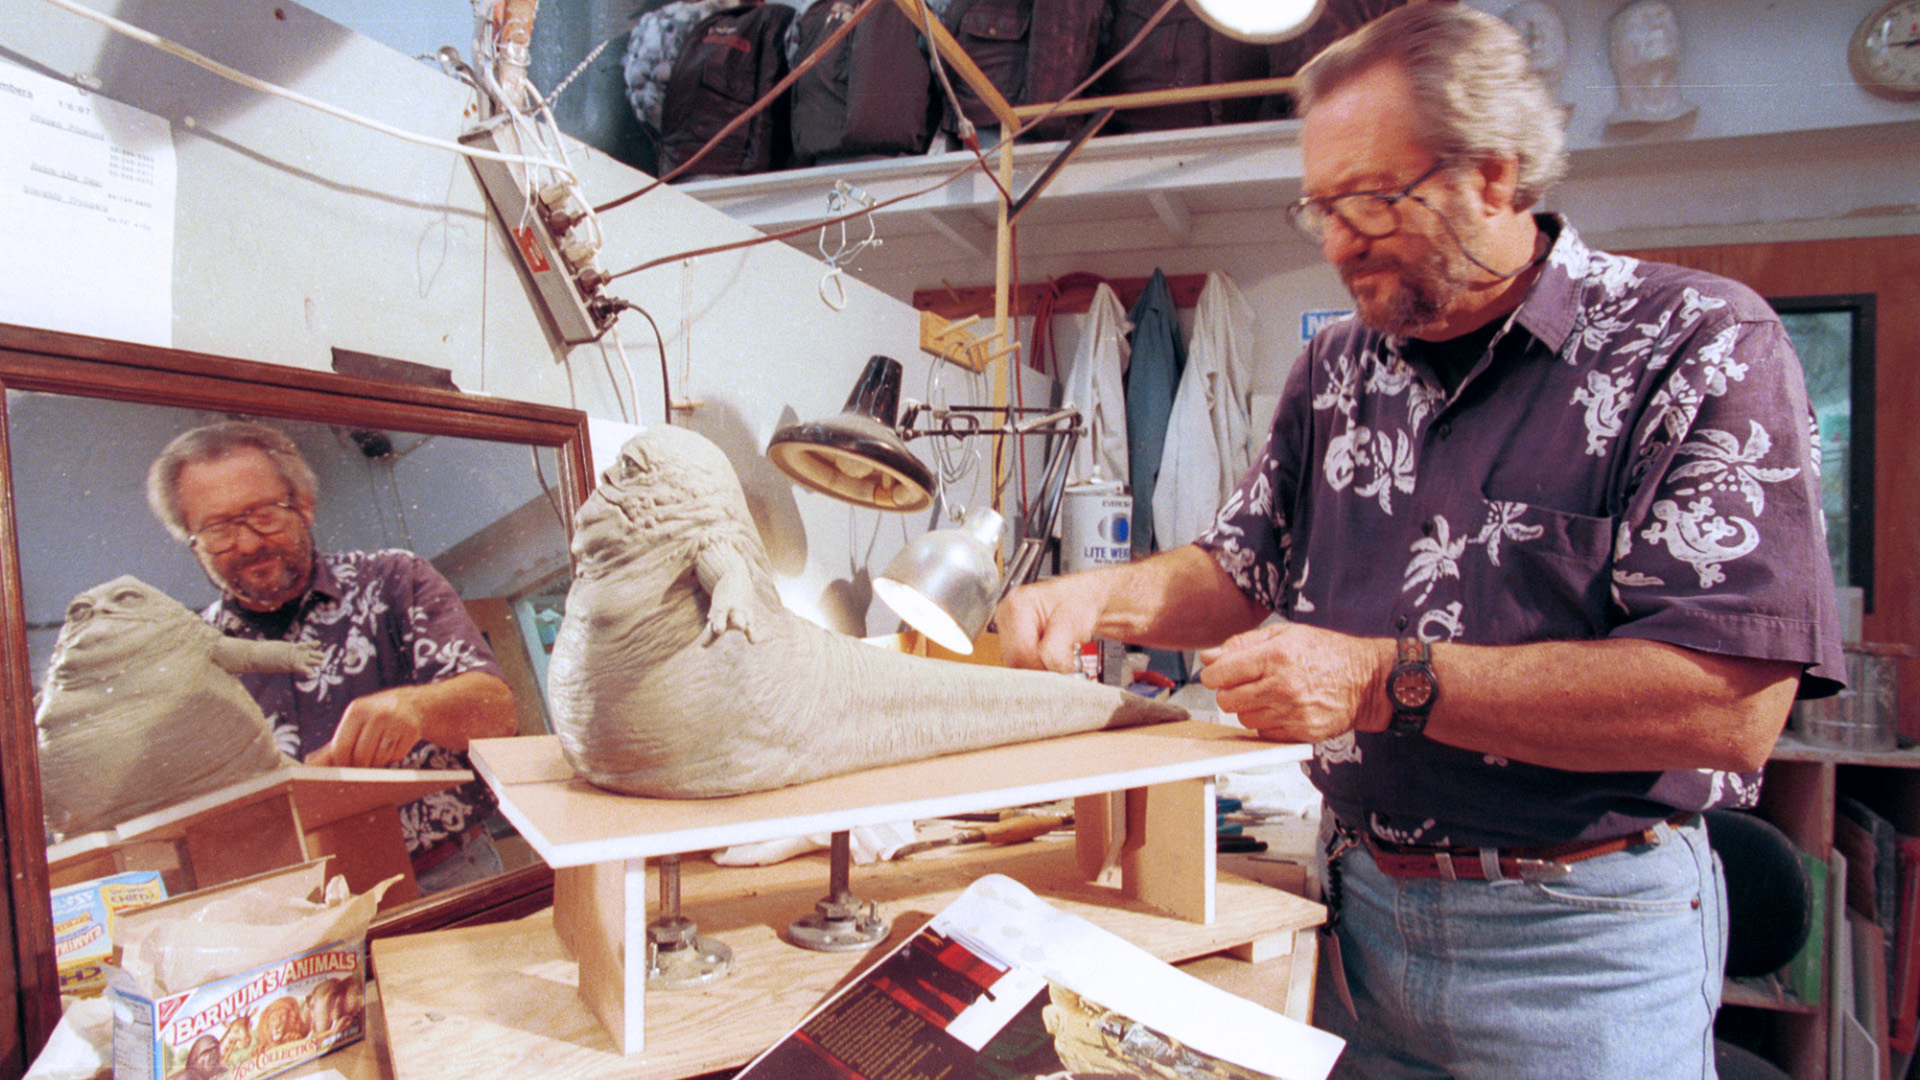 Sculptor Richard Miller